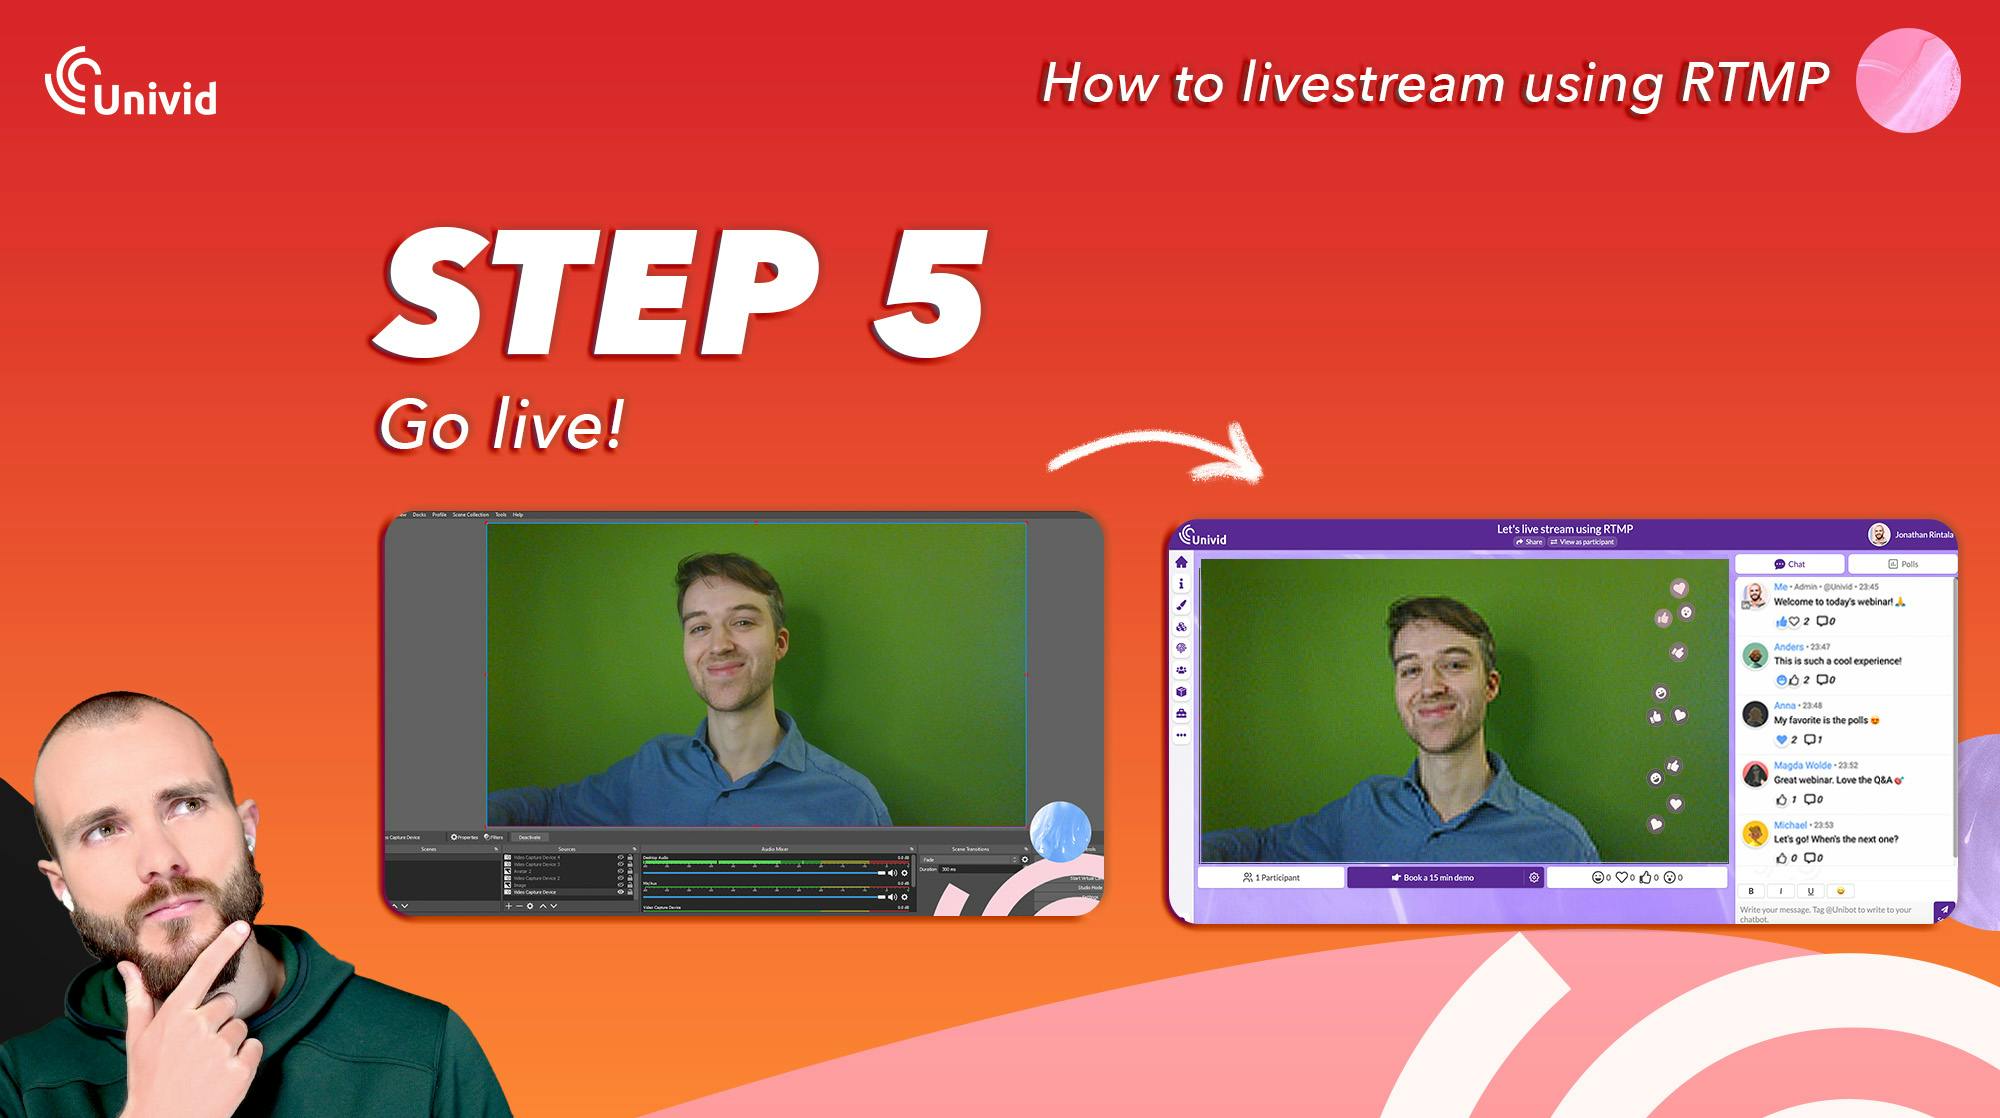 RTMP How to livestream guide - Step 5 - Go live